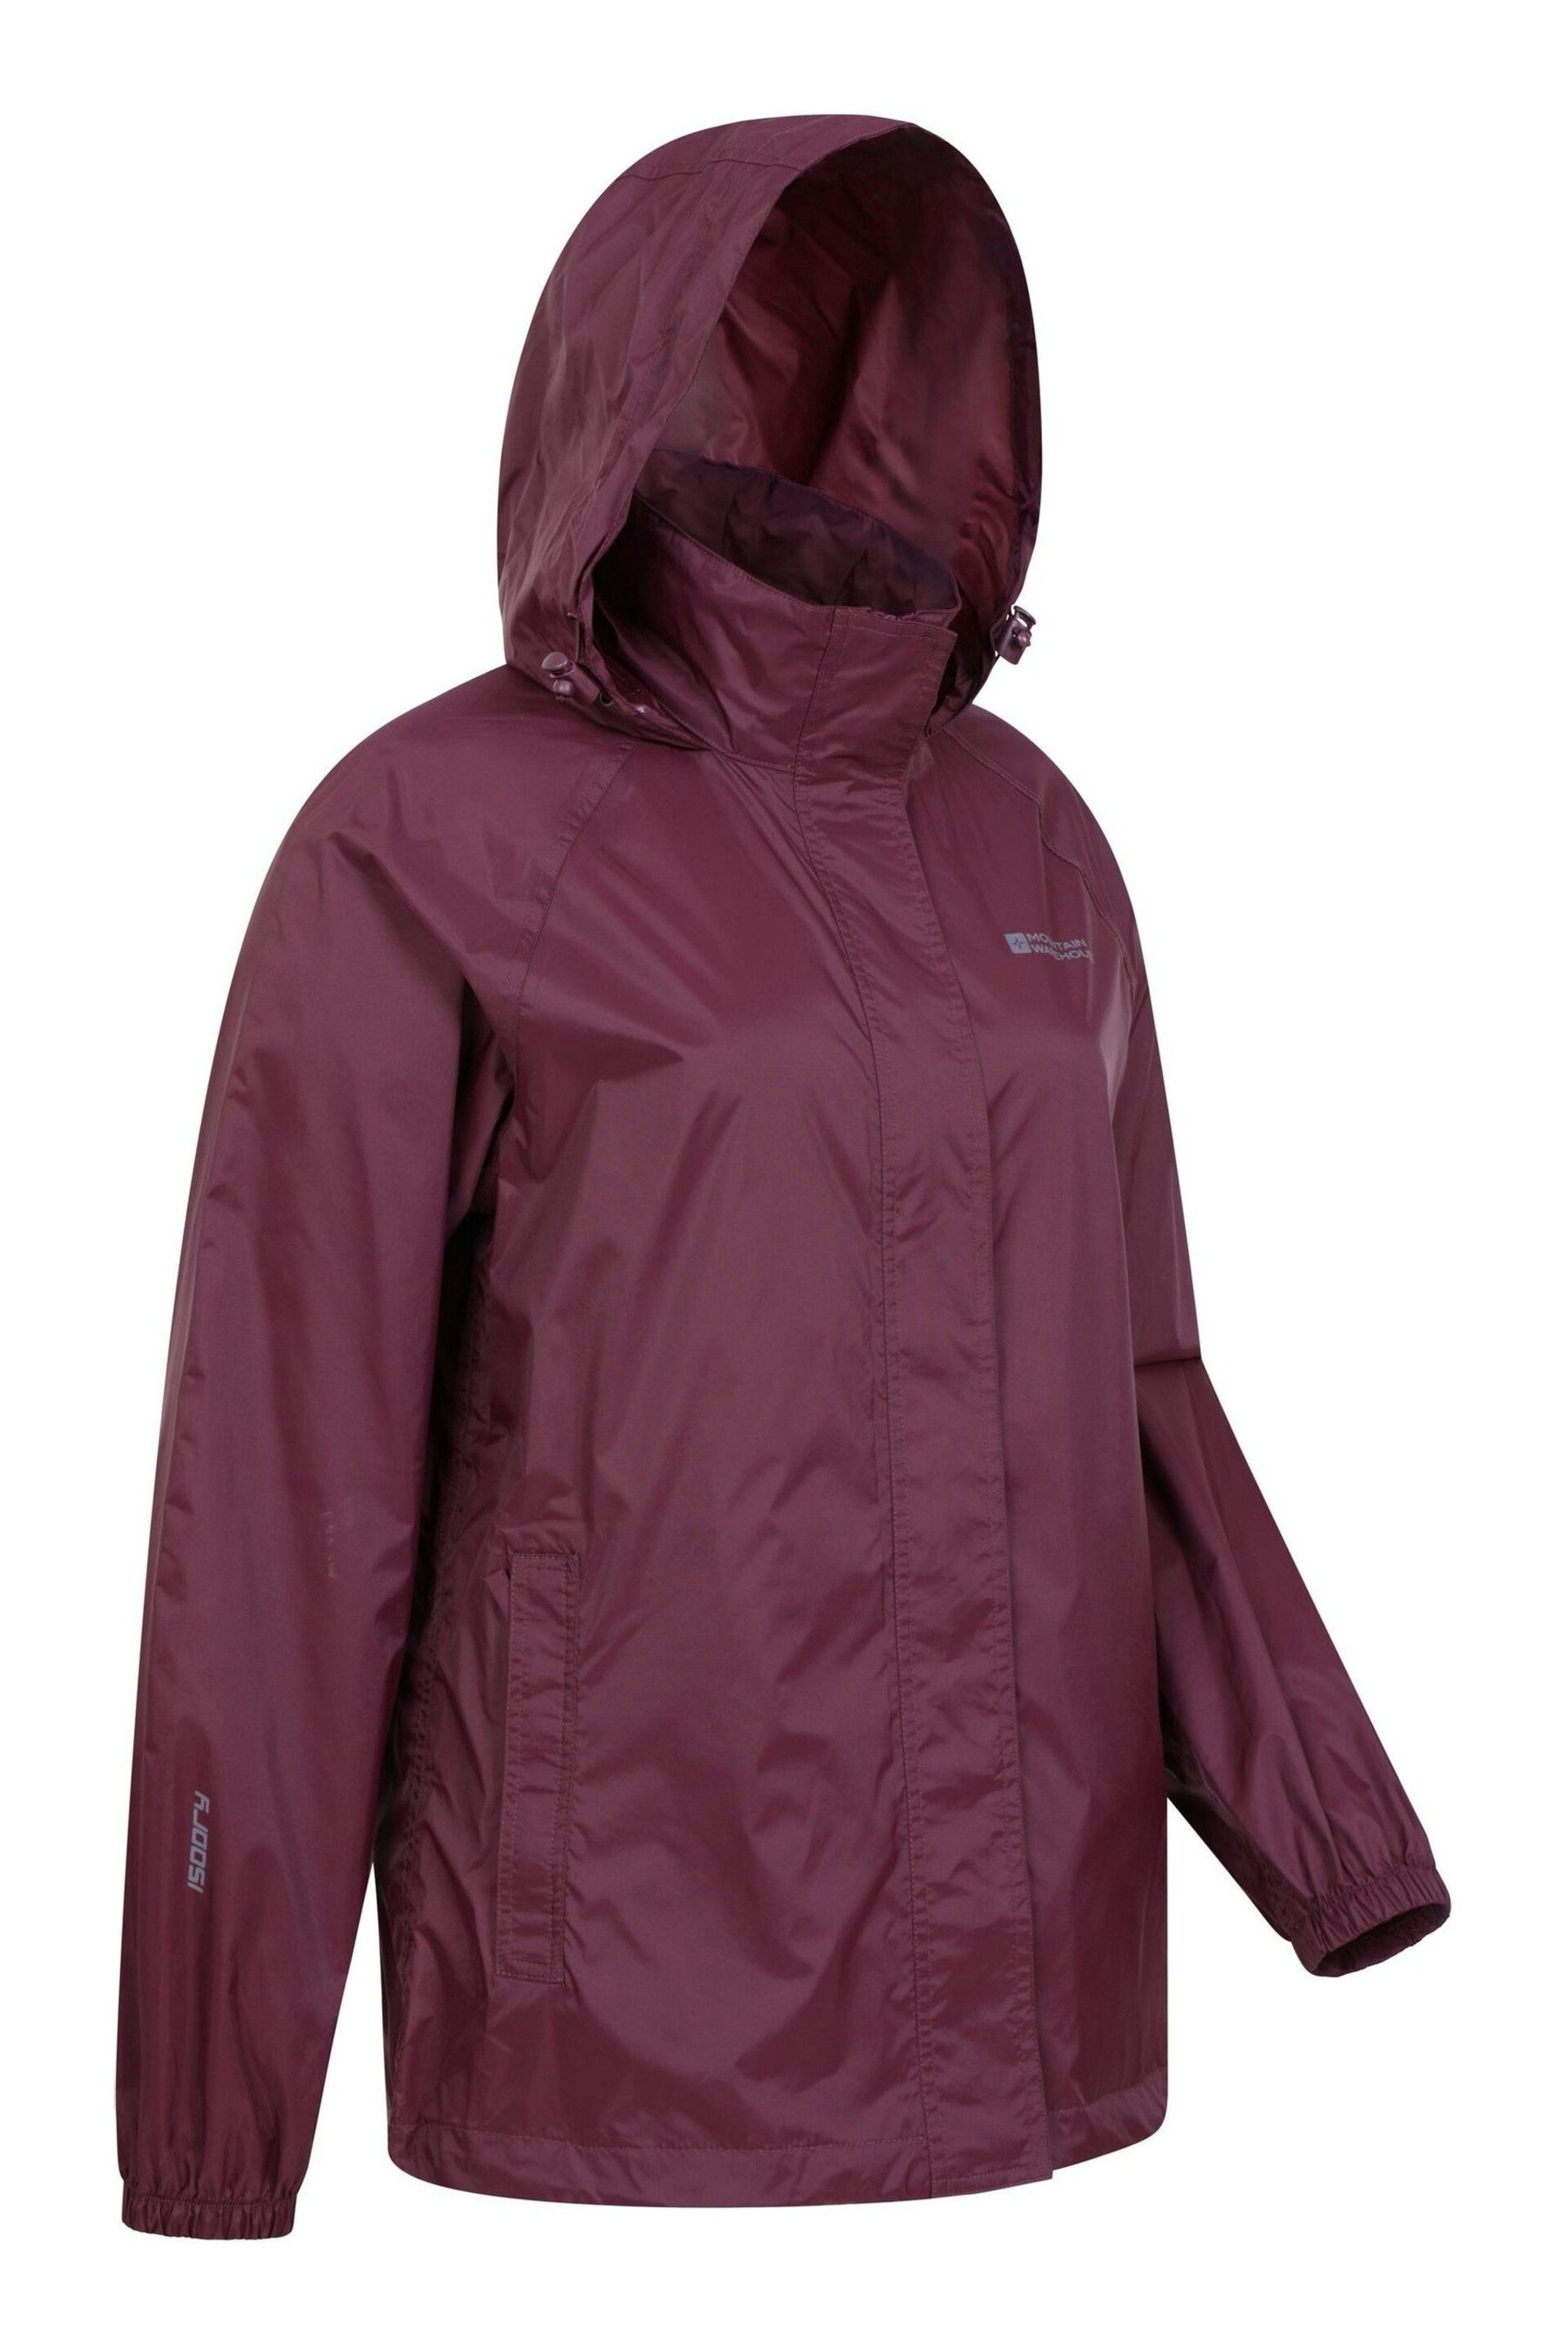 Mountain Warehouse Purple Womens Pakka Waterproof Jacket - Image 4 of 5